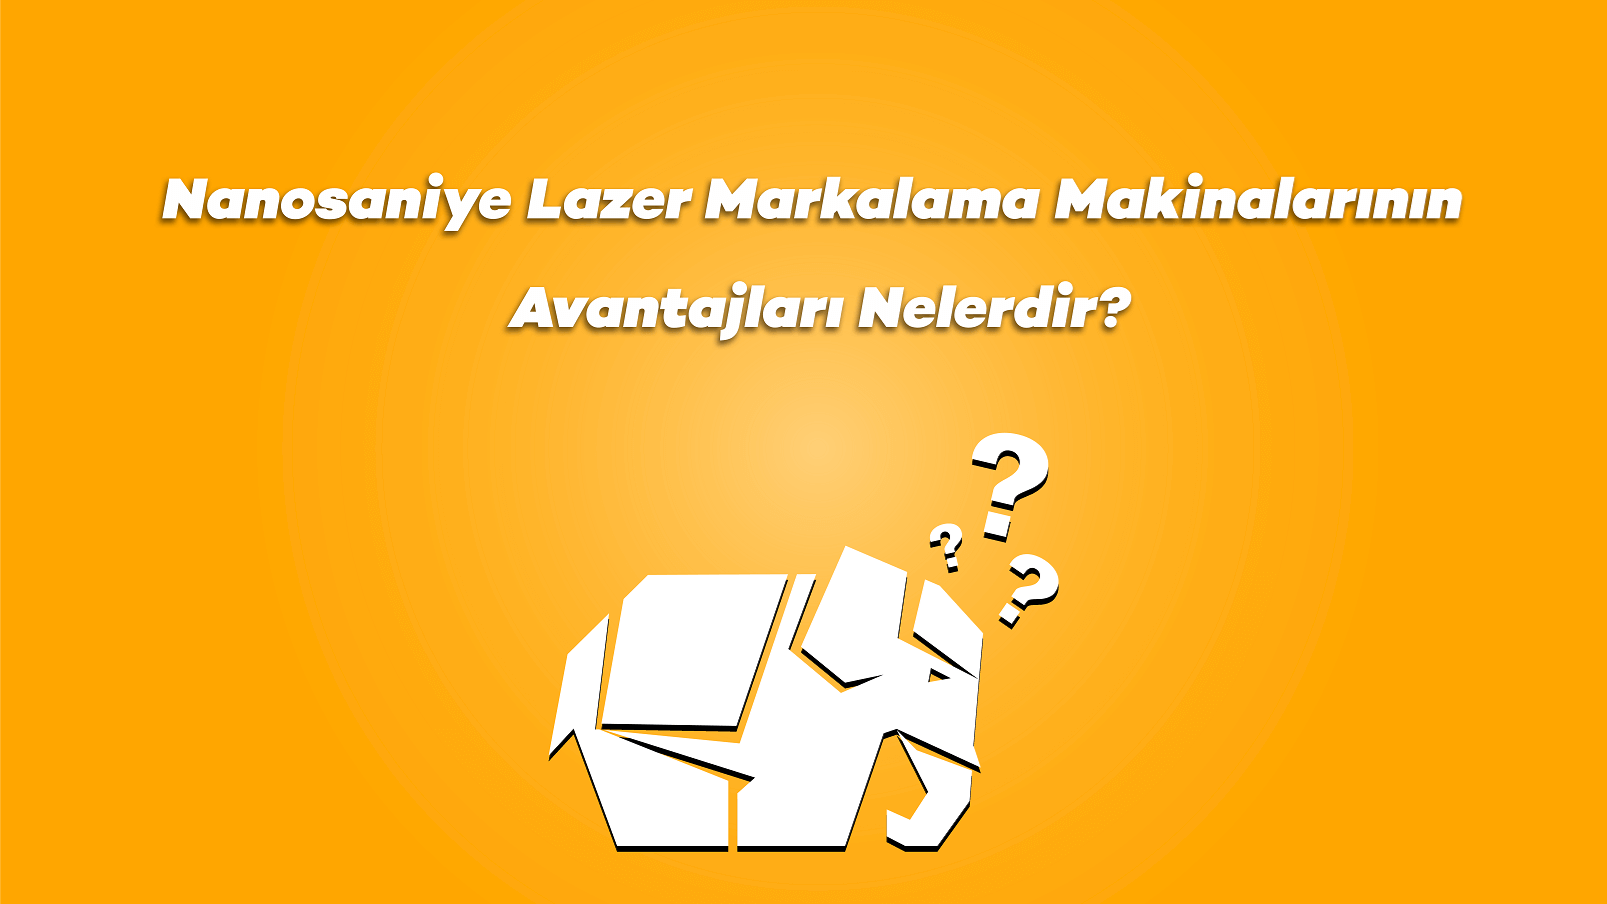 Nanosaniye Lazer Markalama Makinalarının Avantajları Nelerdir?